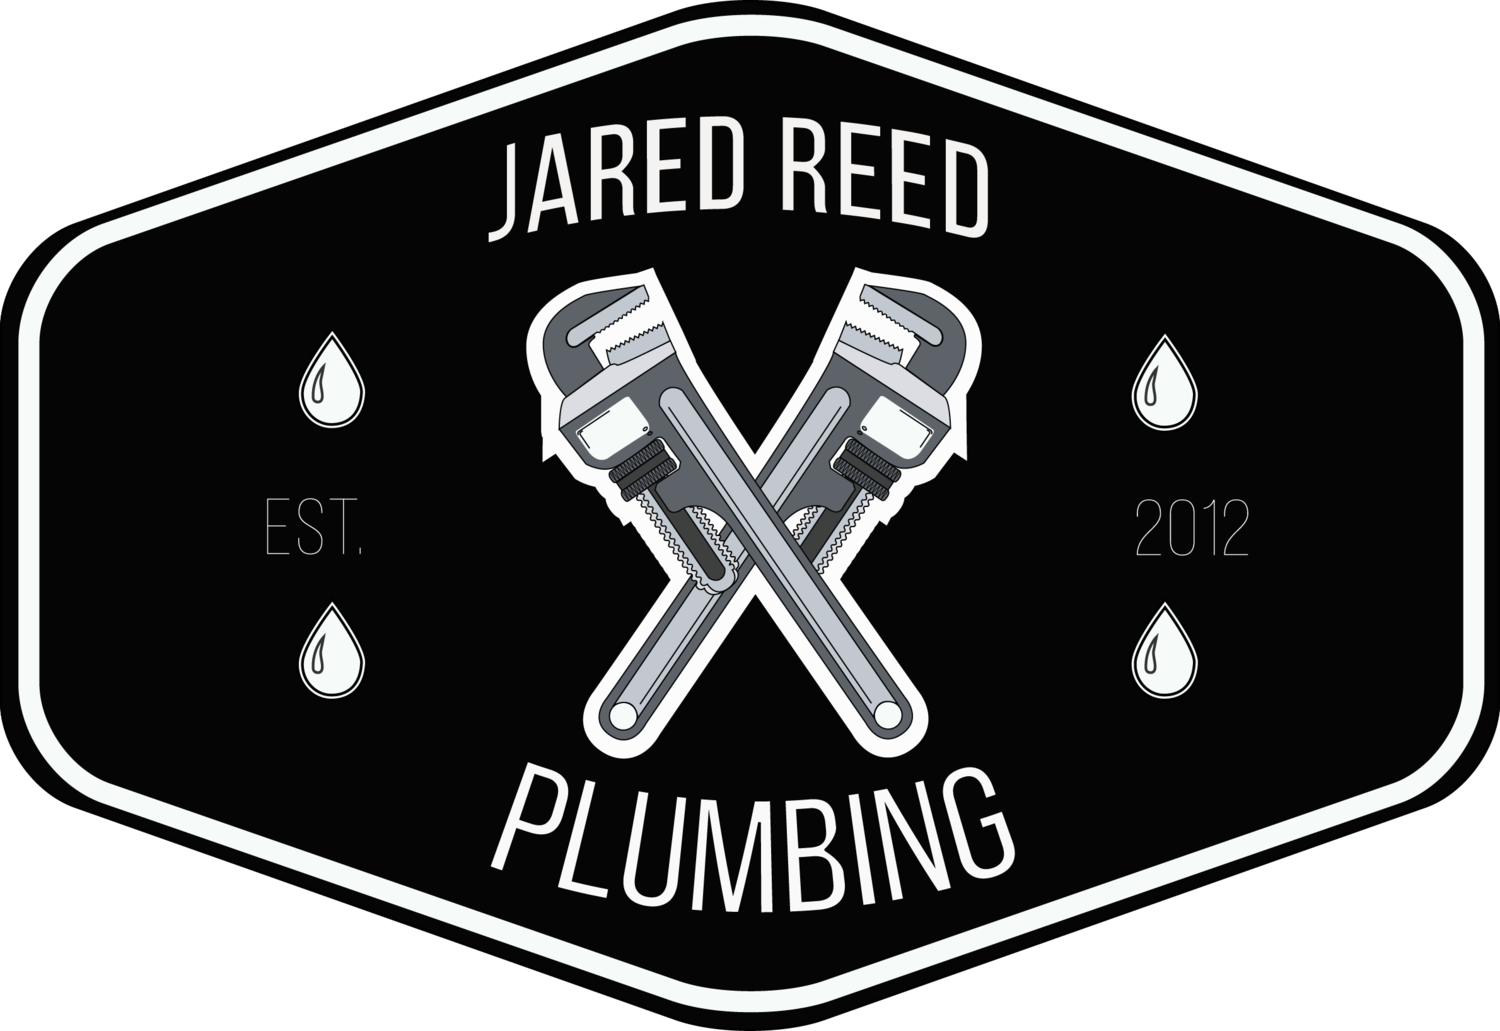 Jared Reed Plumbing | EST 2012